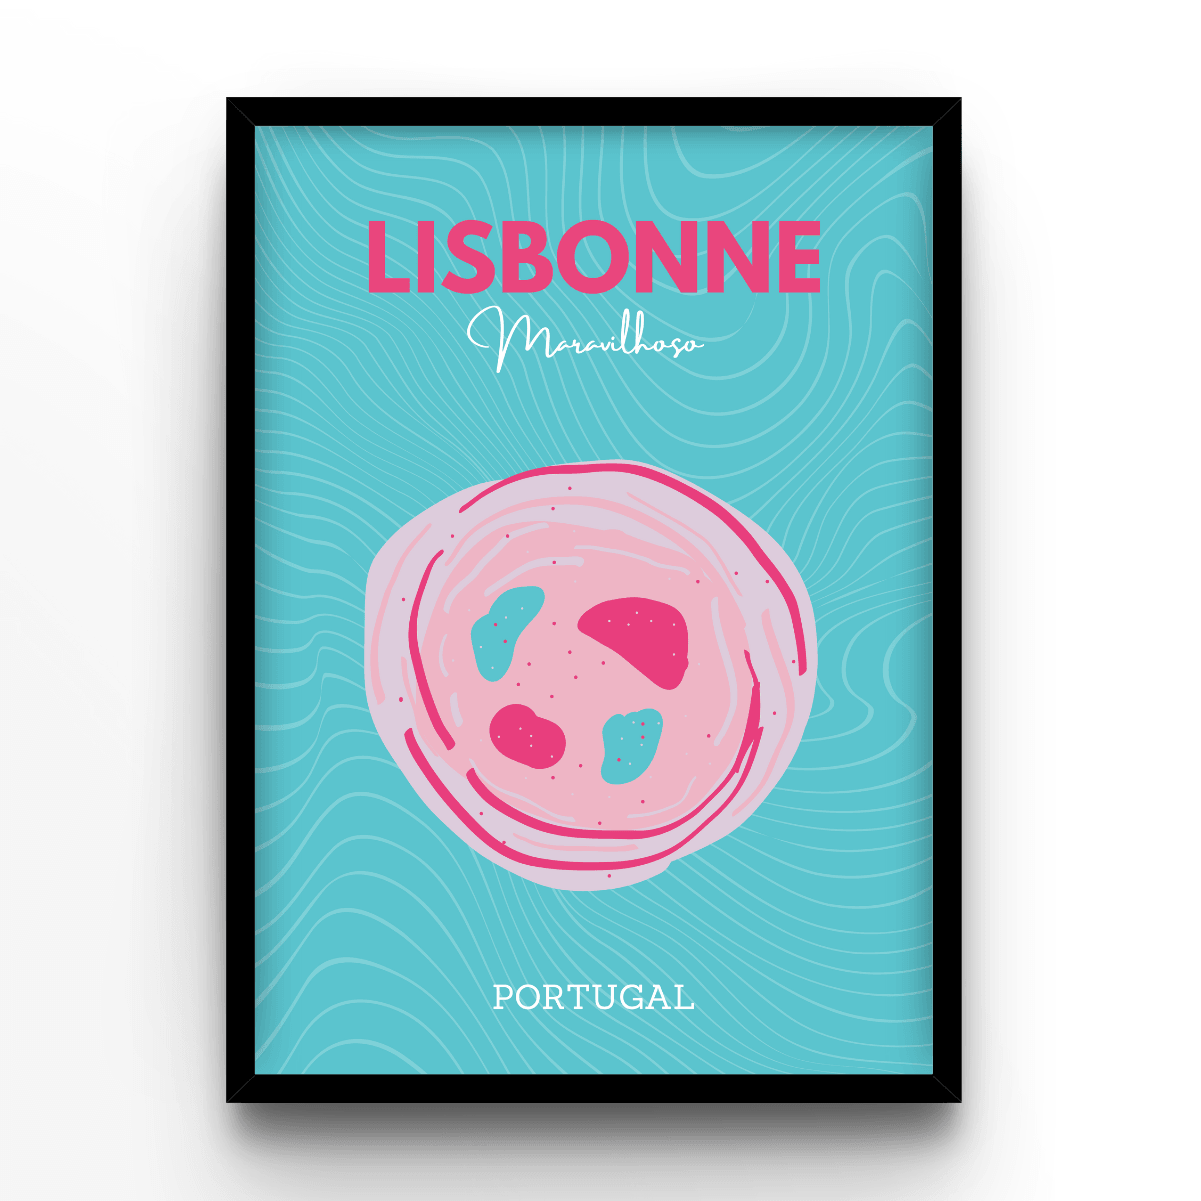 Lisbonne - A4, A3, A2 Posters Base - Poster Print Shop / Art Prints / PostersBase